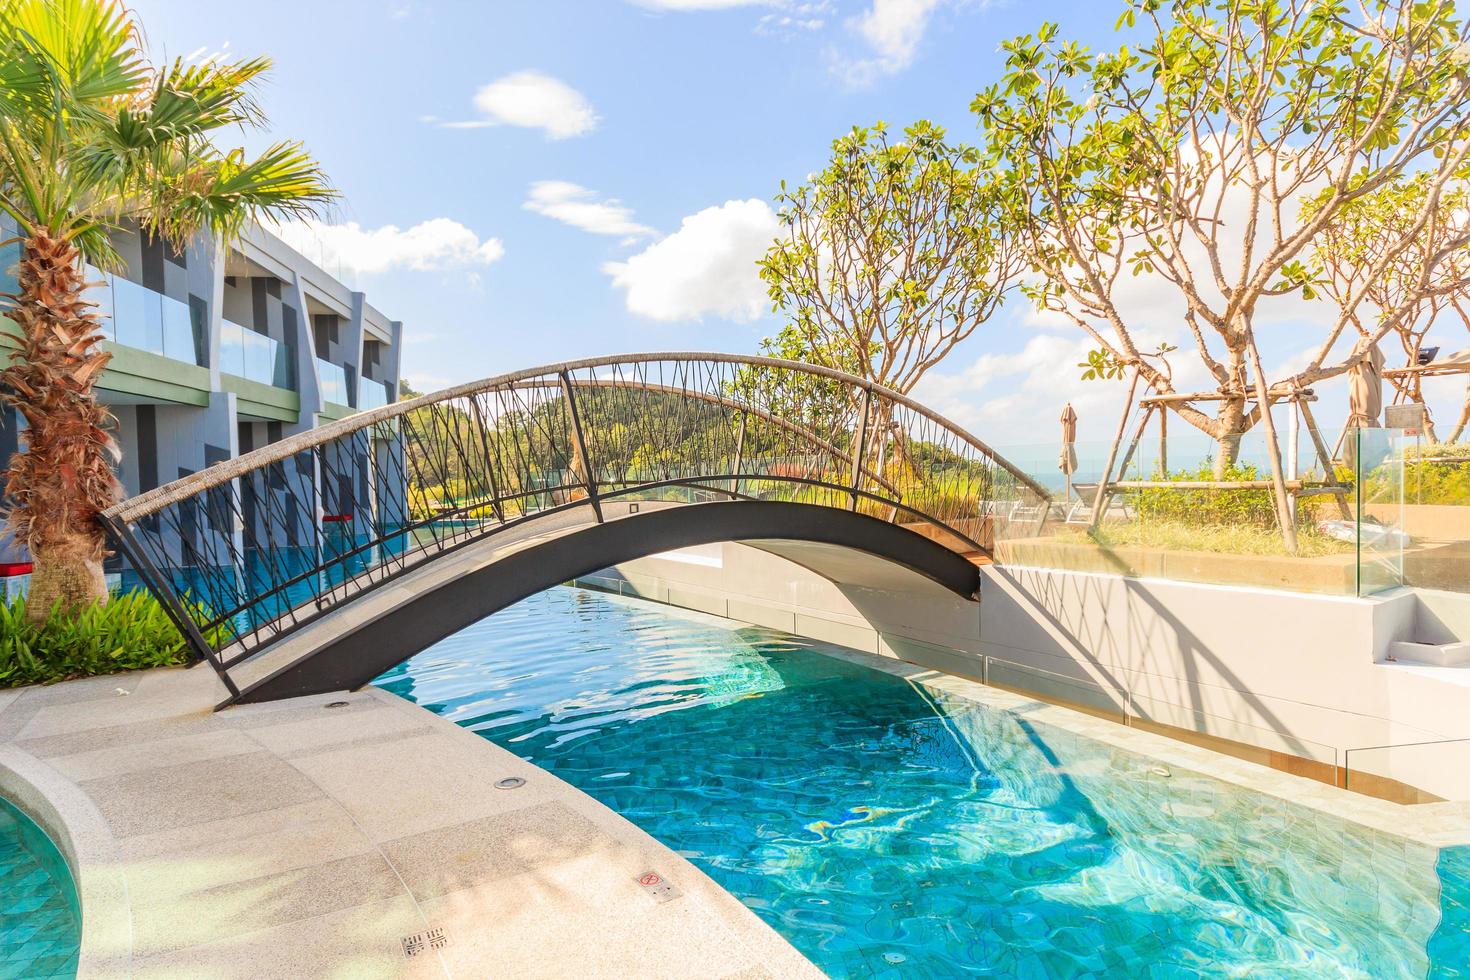 zwembad bij crest resort en poolvilla's en resorts, phuket, thailand, 2017 foto